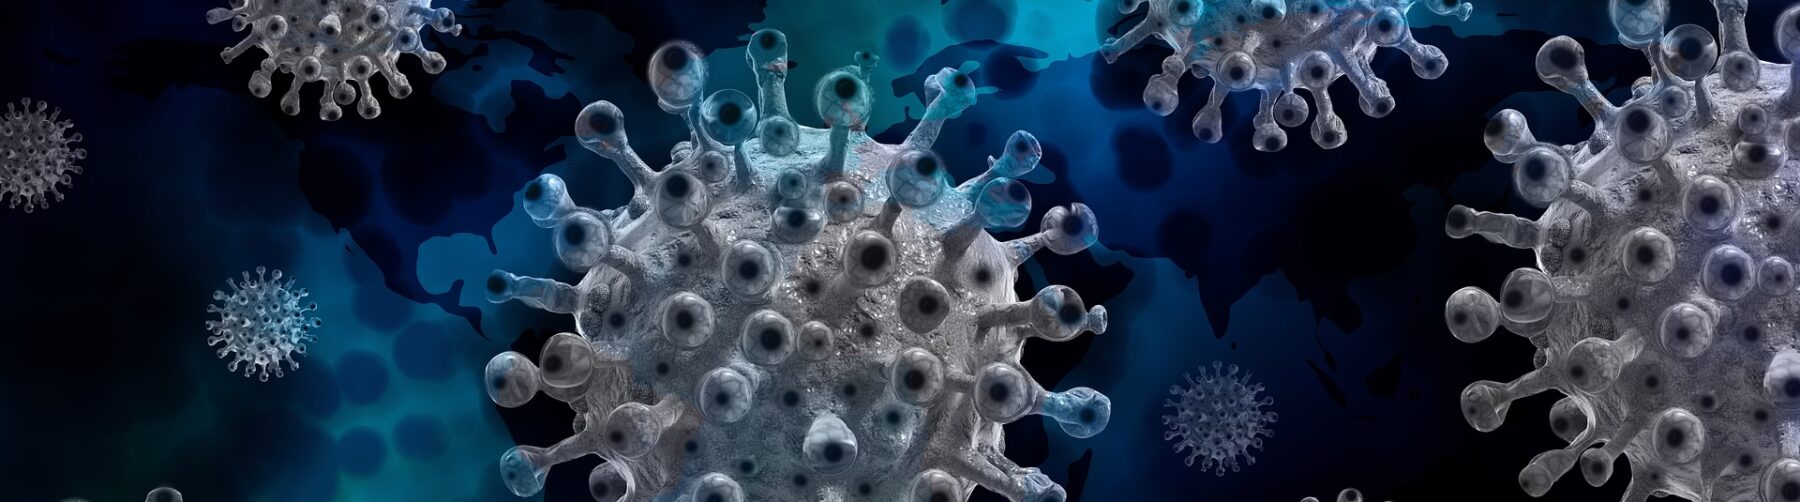 Gray viruses float against a dark blue background